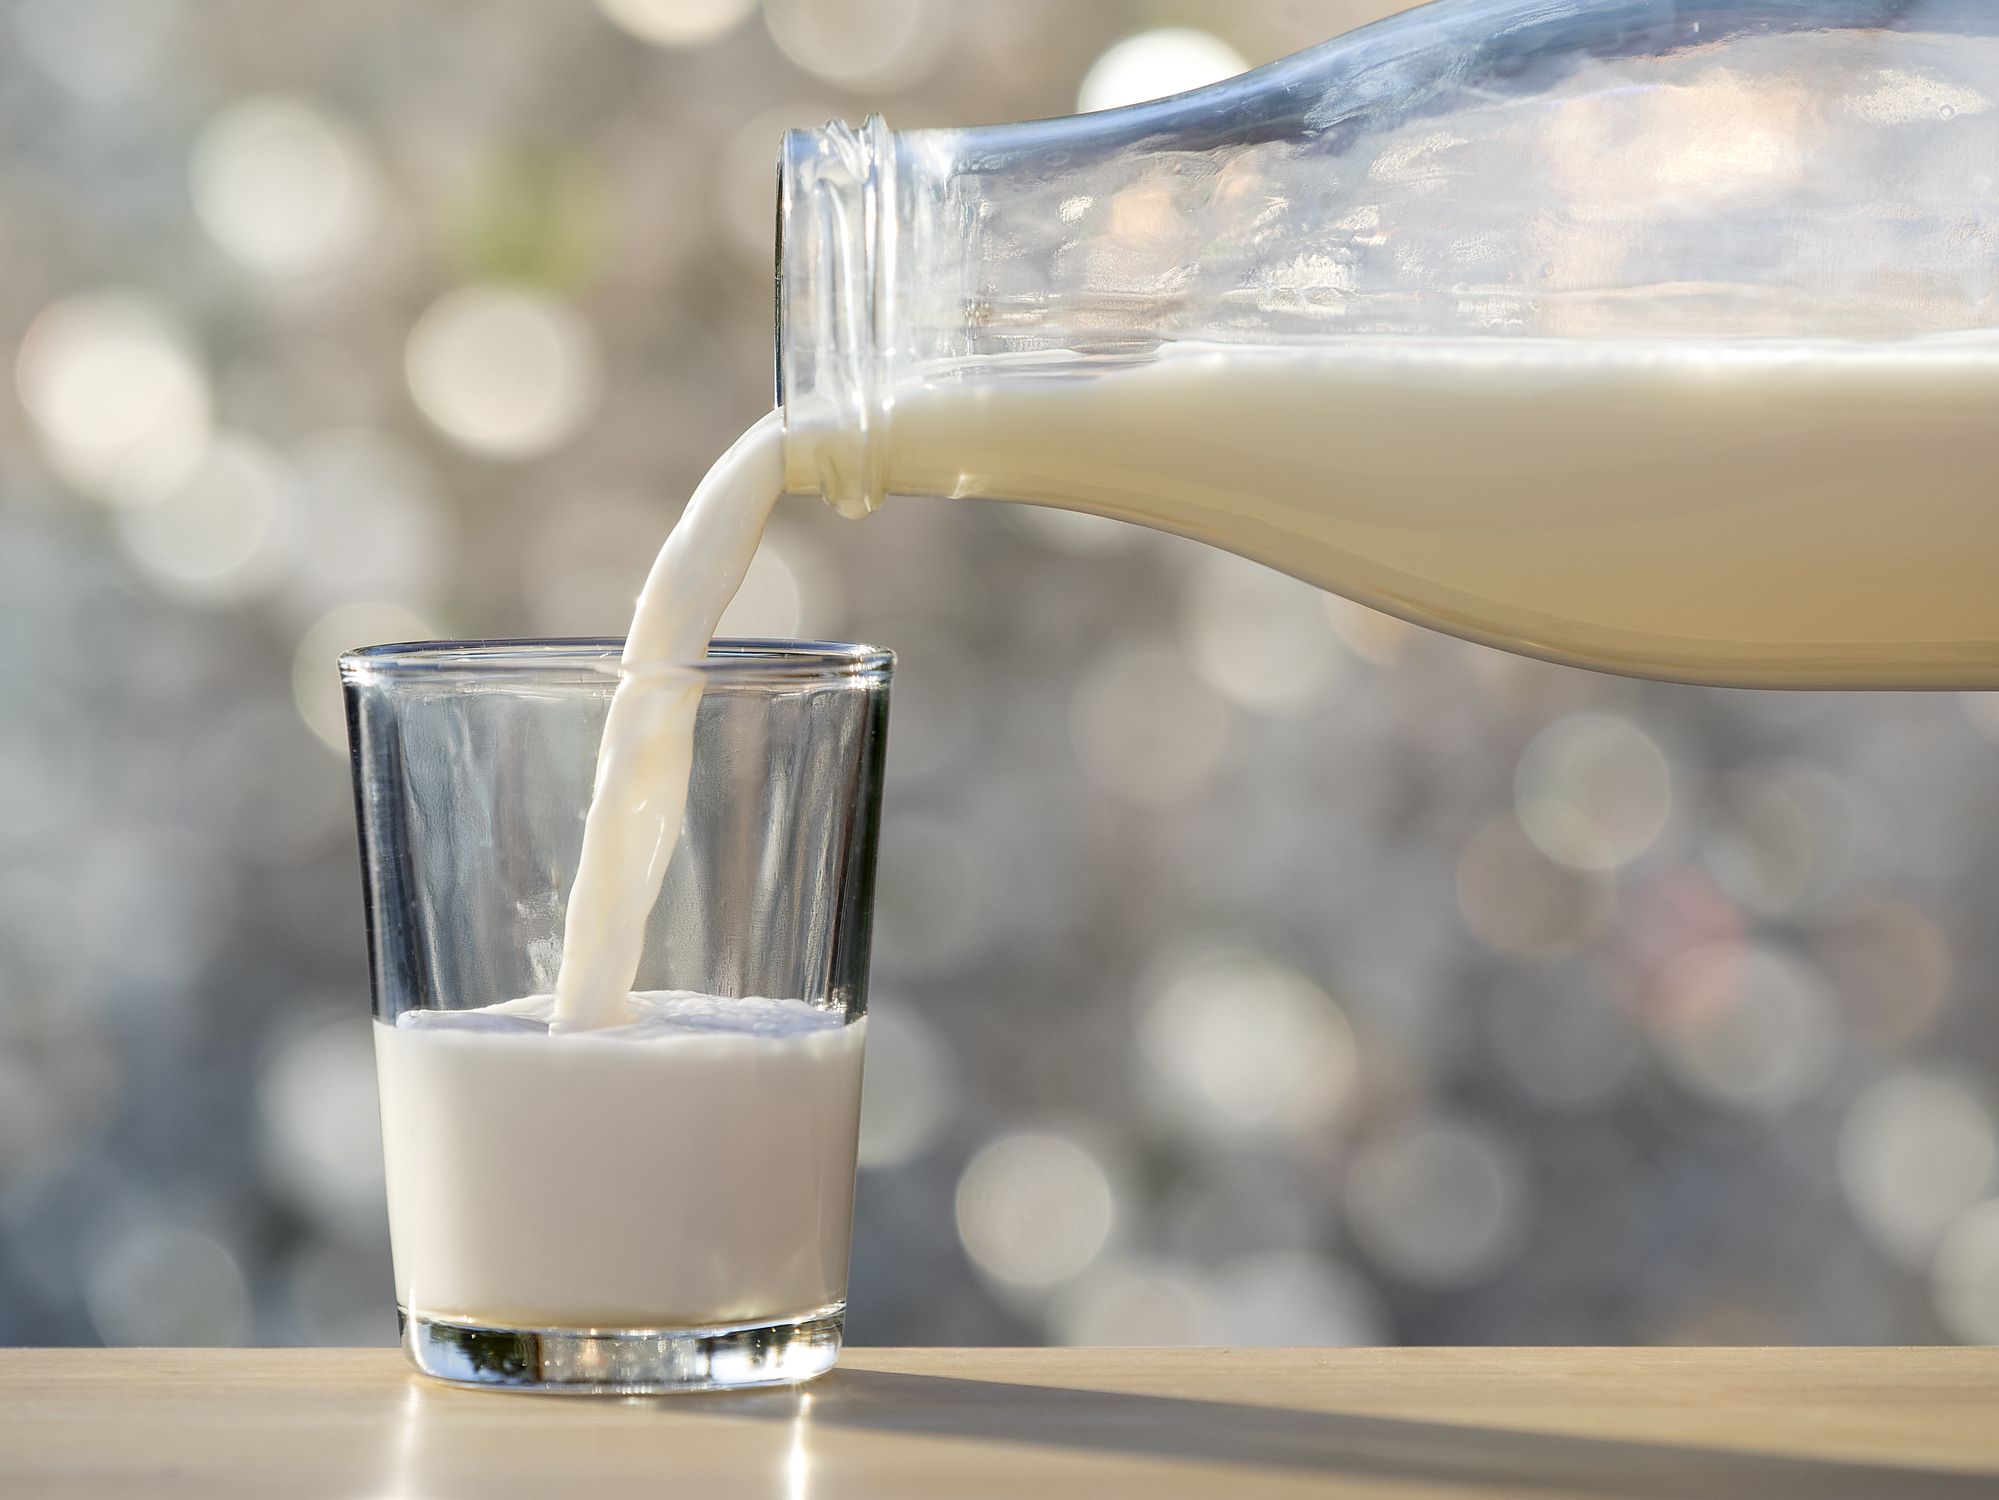 Goat Milk vs. Cow Milk: Which Is Healthier?